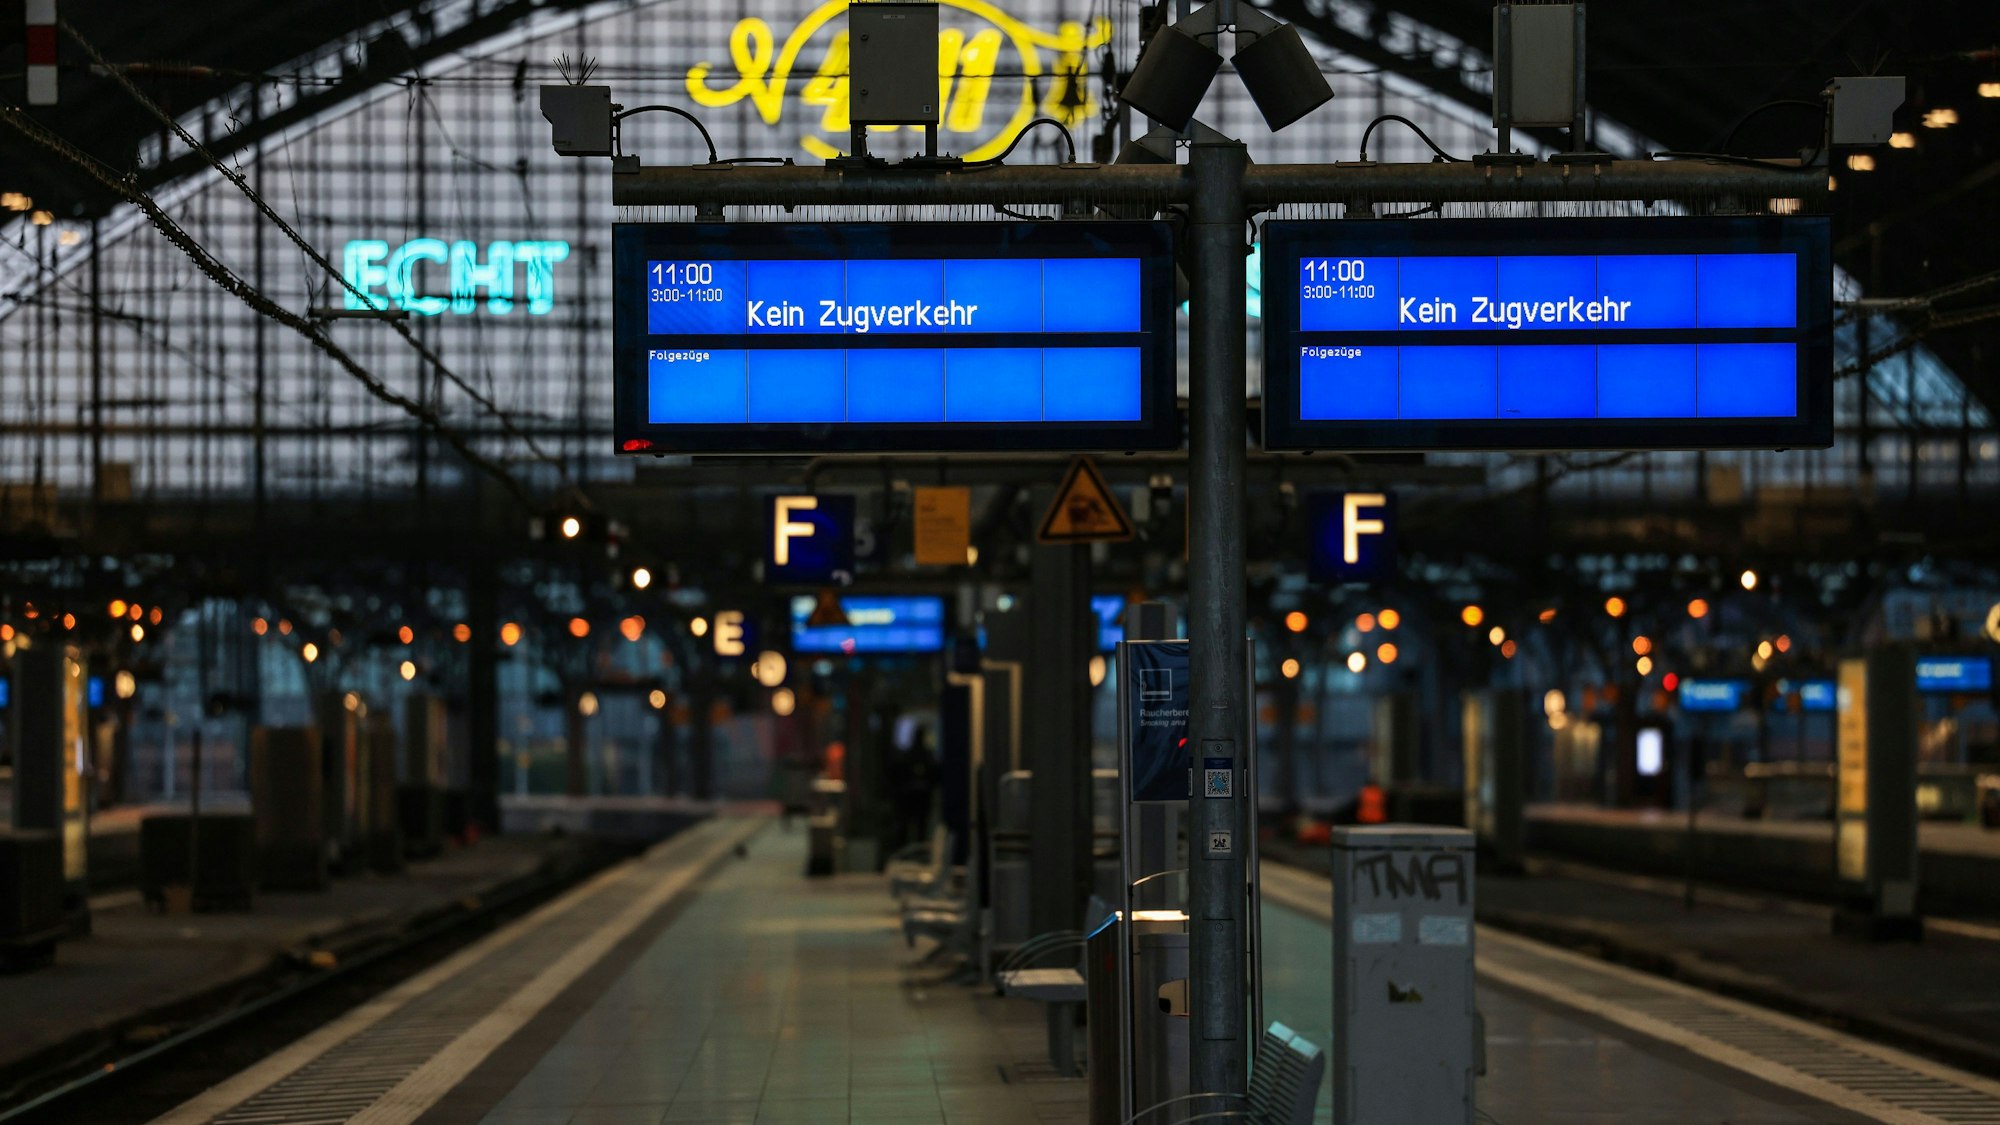 Der Bahnsteig im Hauptbahnhof ist leer, auf den Anzeigetafeln steht "Kein Zugverkehr".